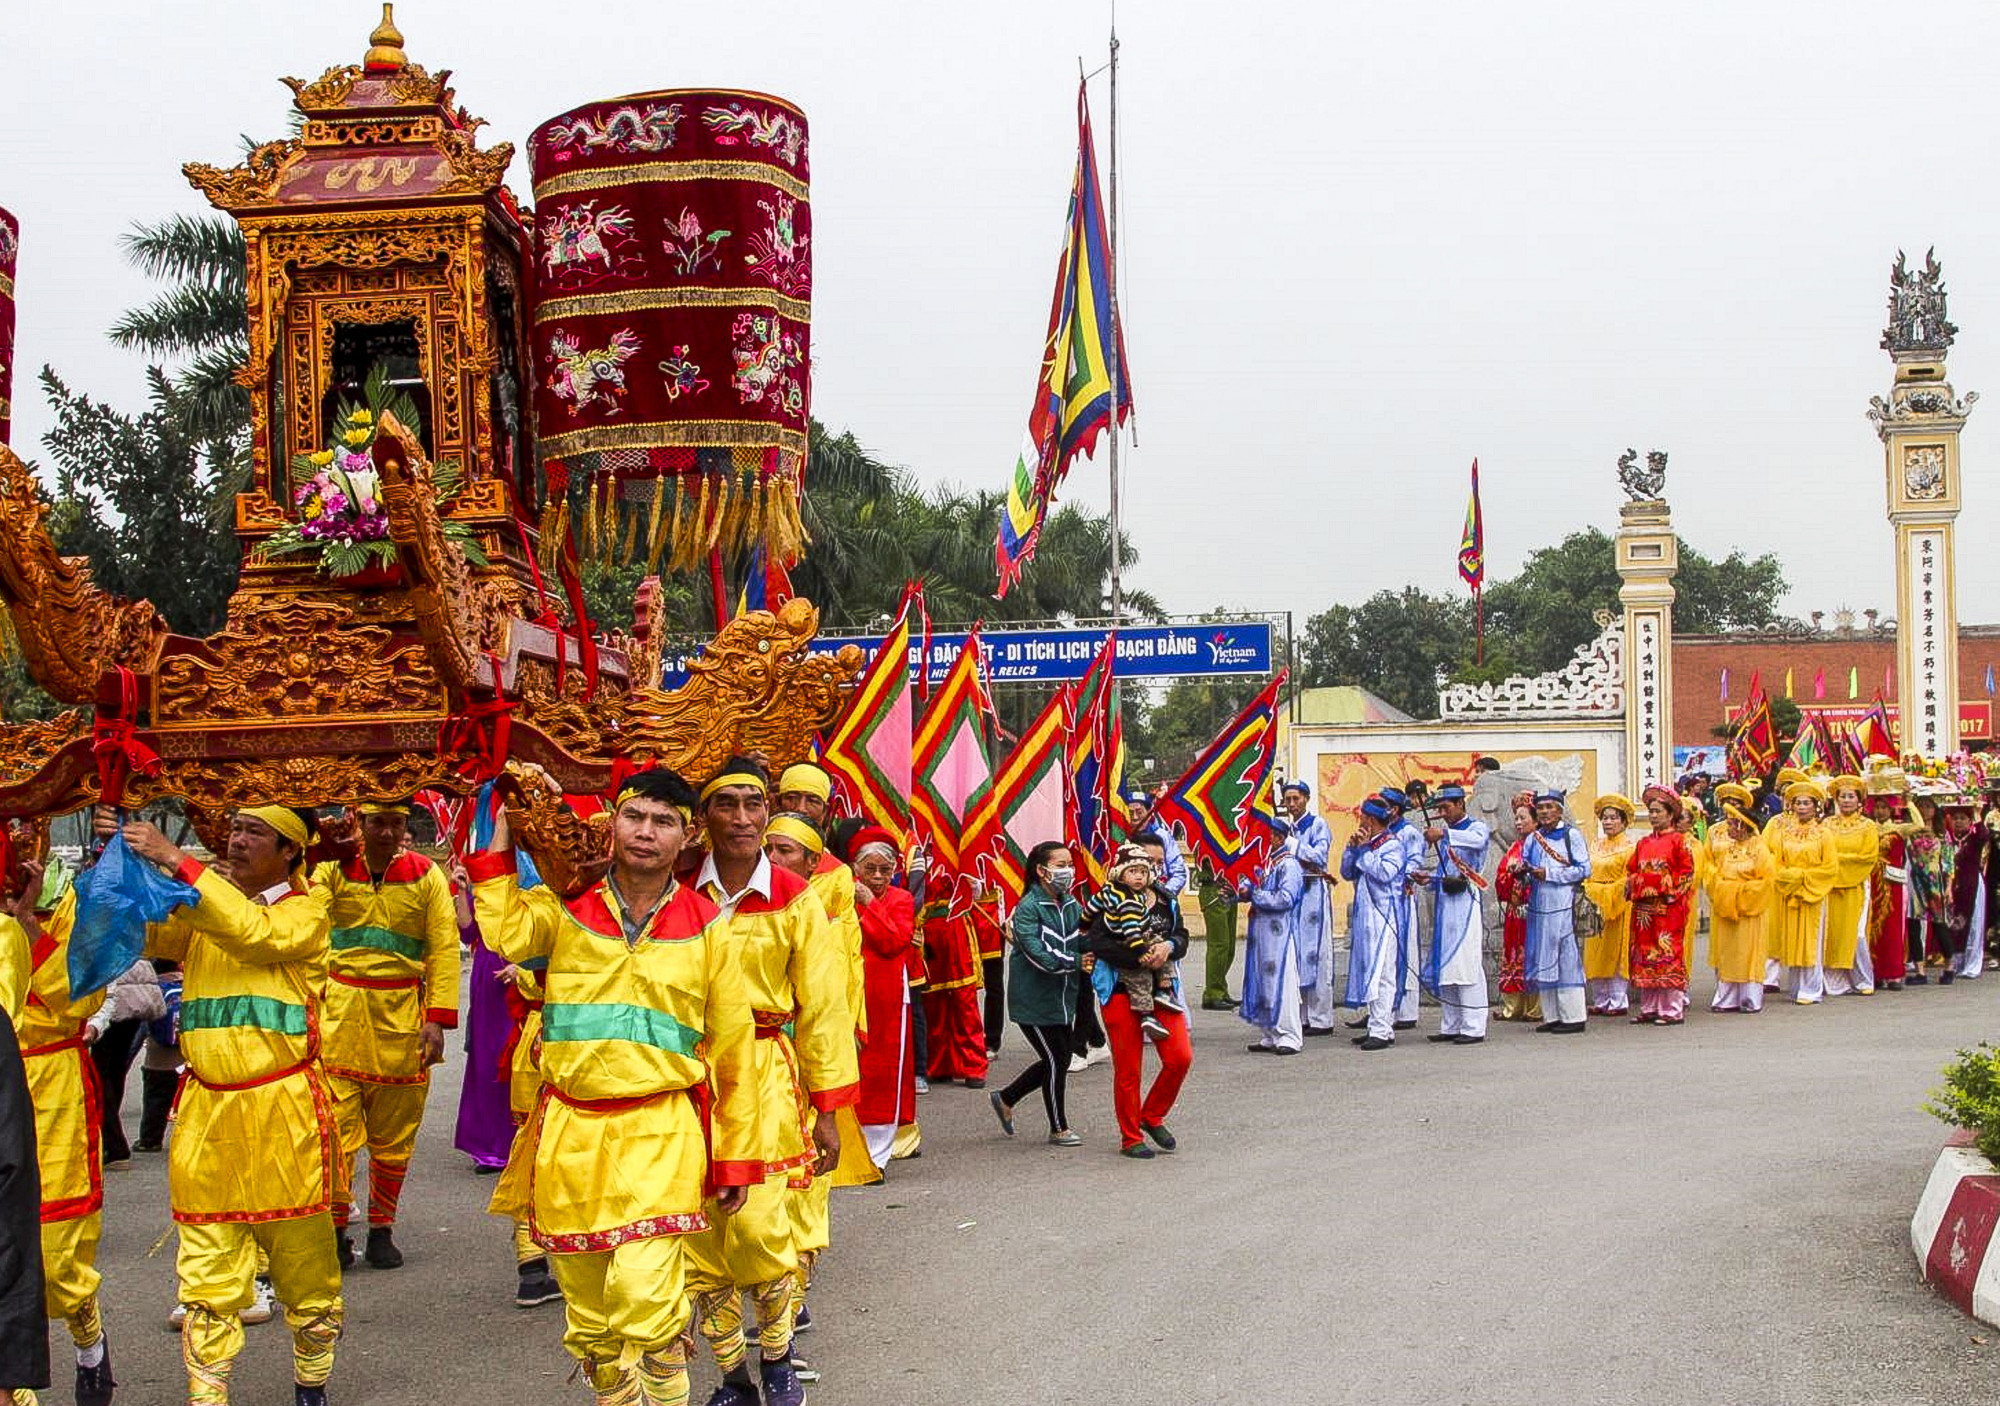 Lễ hội Bạch Đằng là một trong những lễ hội lớn được người dân quan tâm